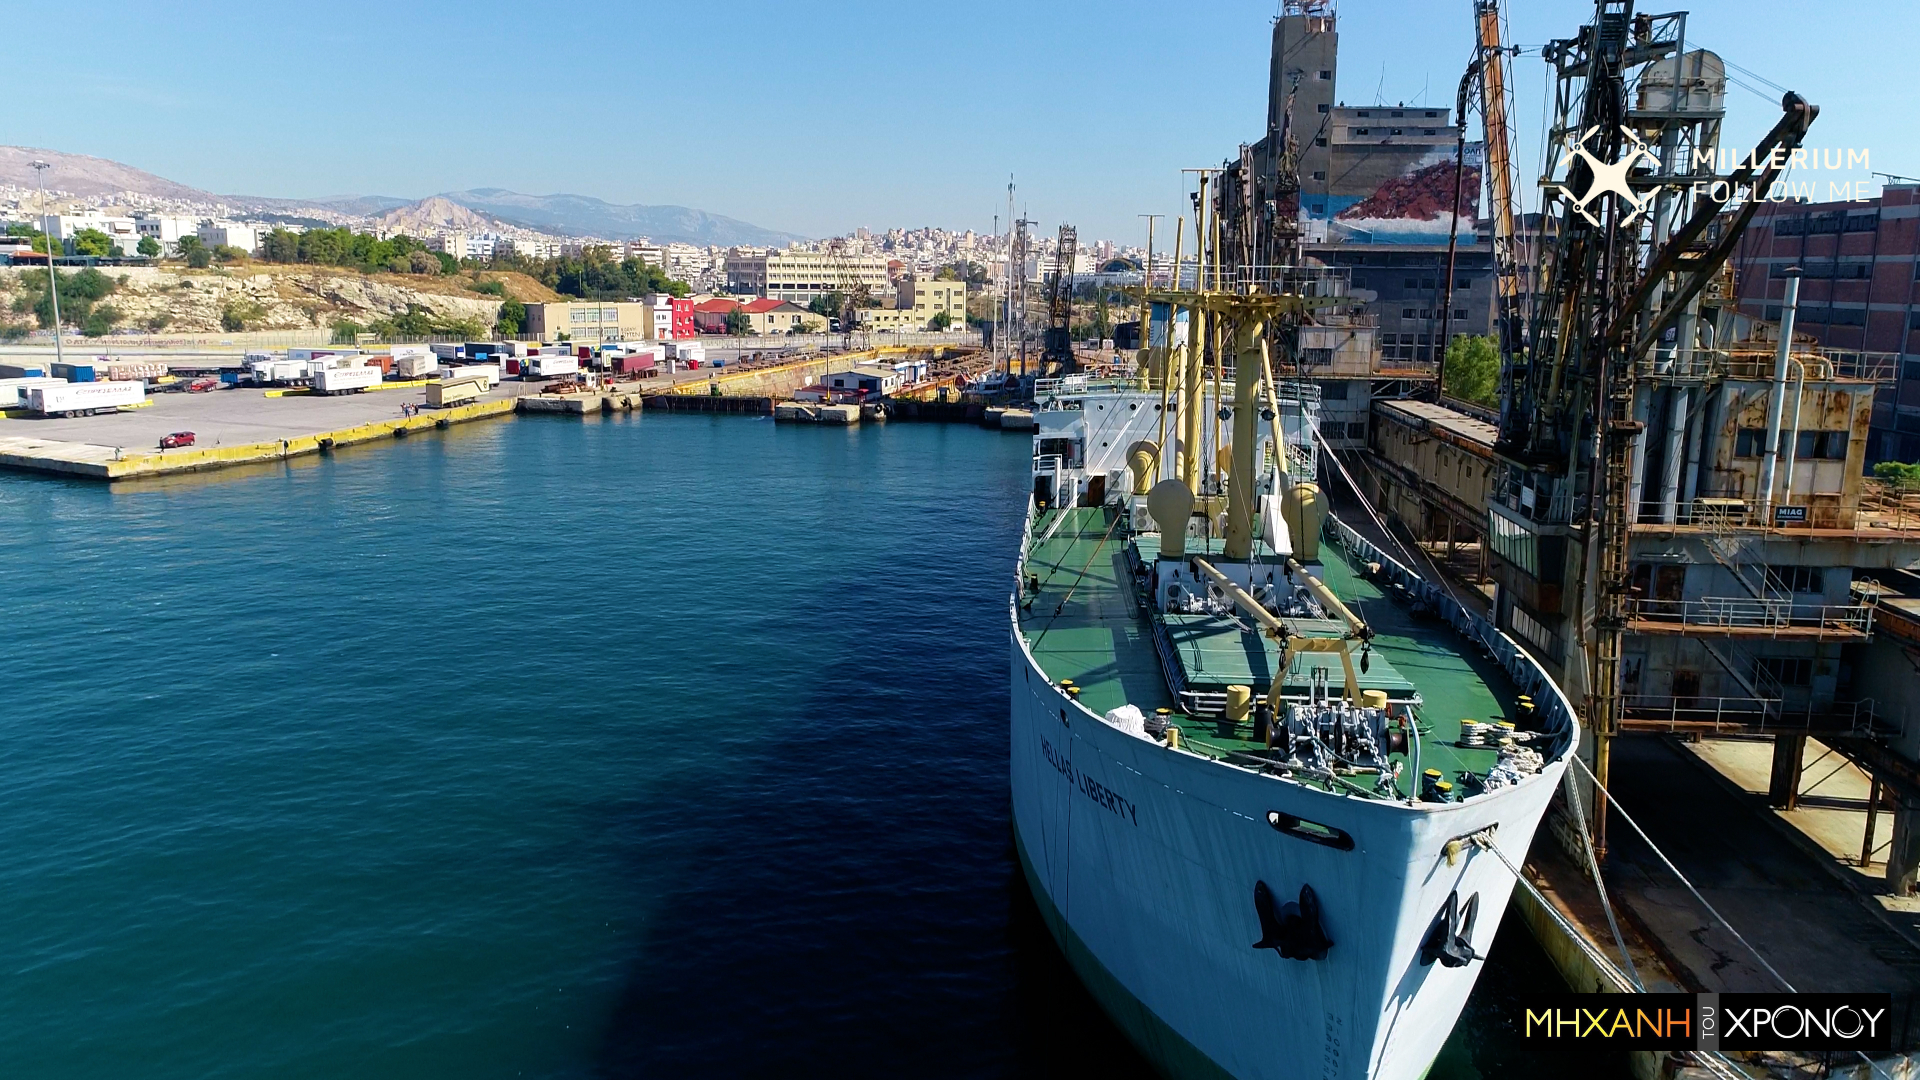 Το μεγαλύτερο πλωτό μουσείο της Μεσογείου βρίσκεται στον Πειραιά. Δείτε το πλοίο που αναγέννησε την εμπορική ναυτιλία (drone)